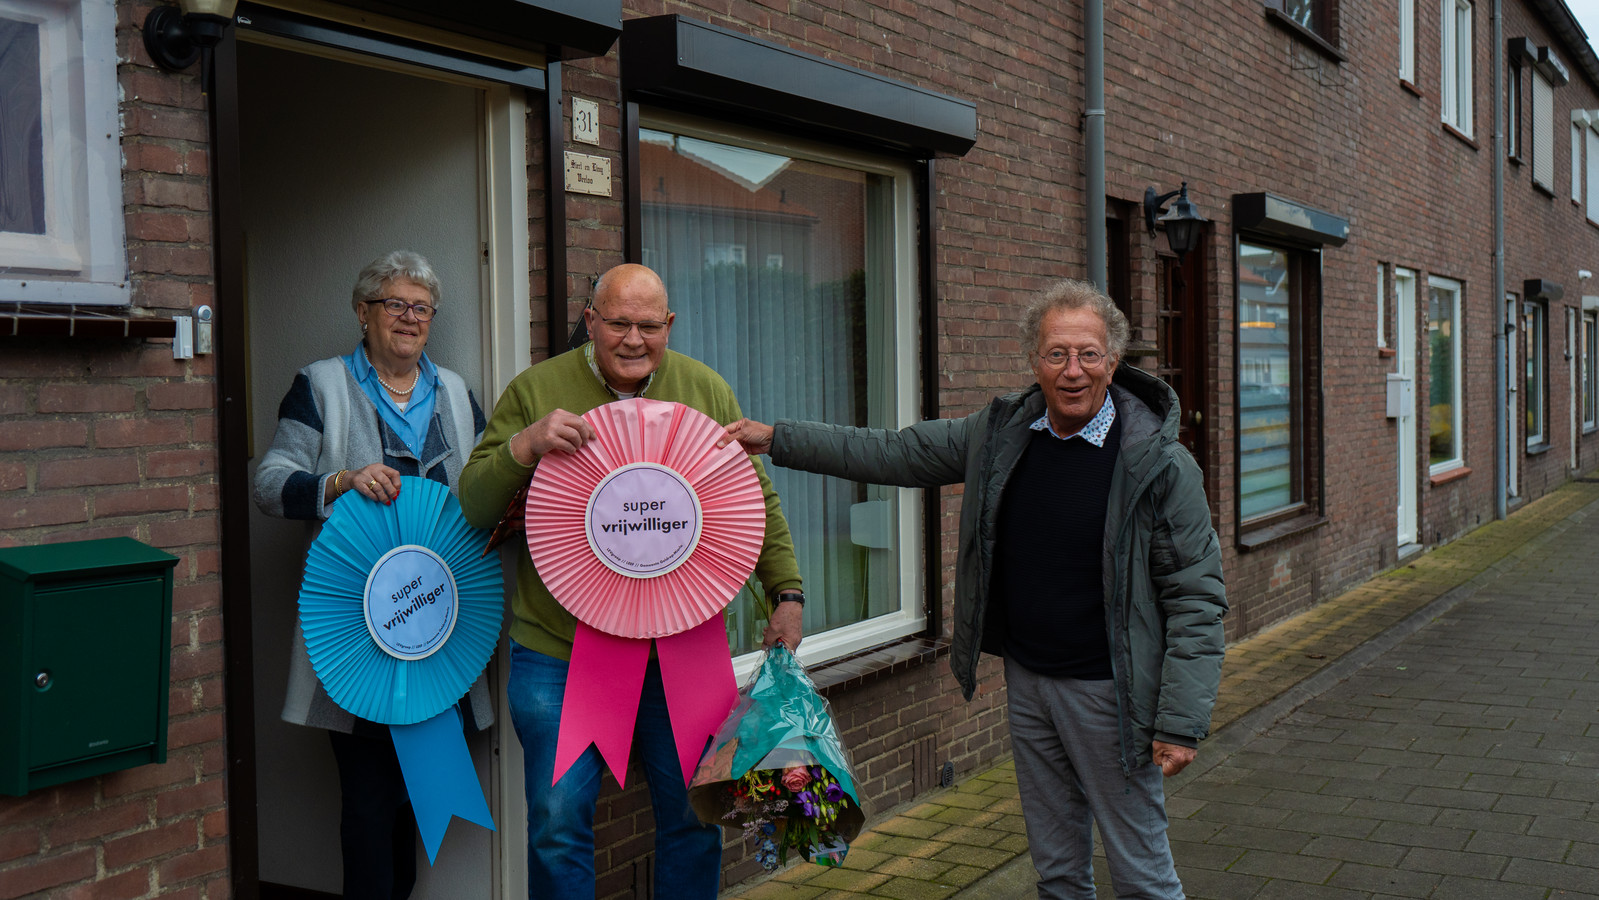 Liny en Siert Veeloo zijn uitgeroepen tot supervrijwilliger van de gemeente Geldrop-Mierlo.